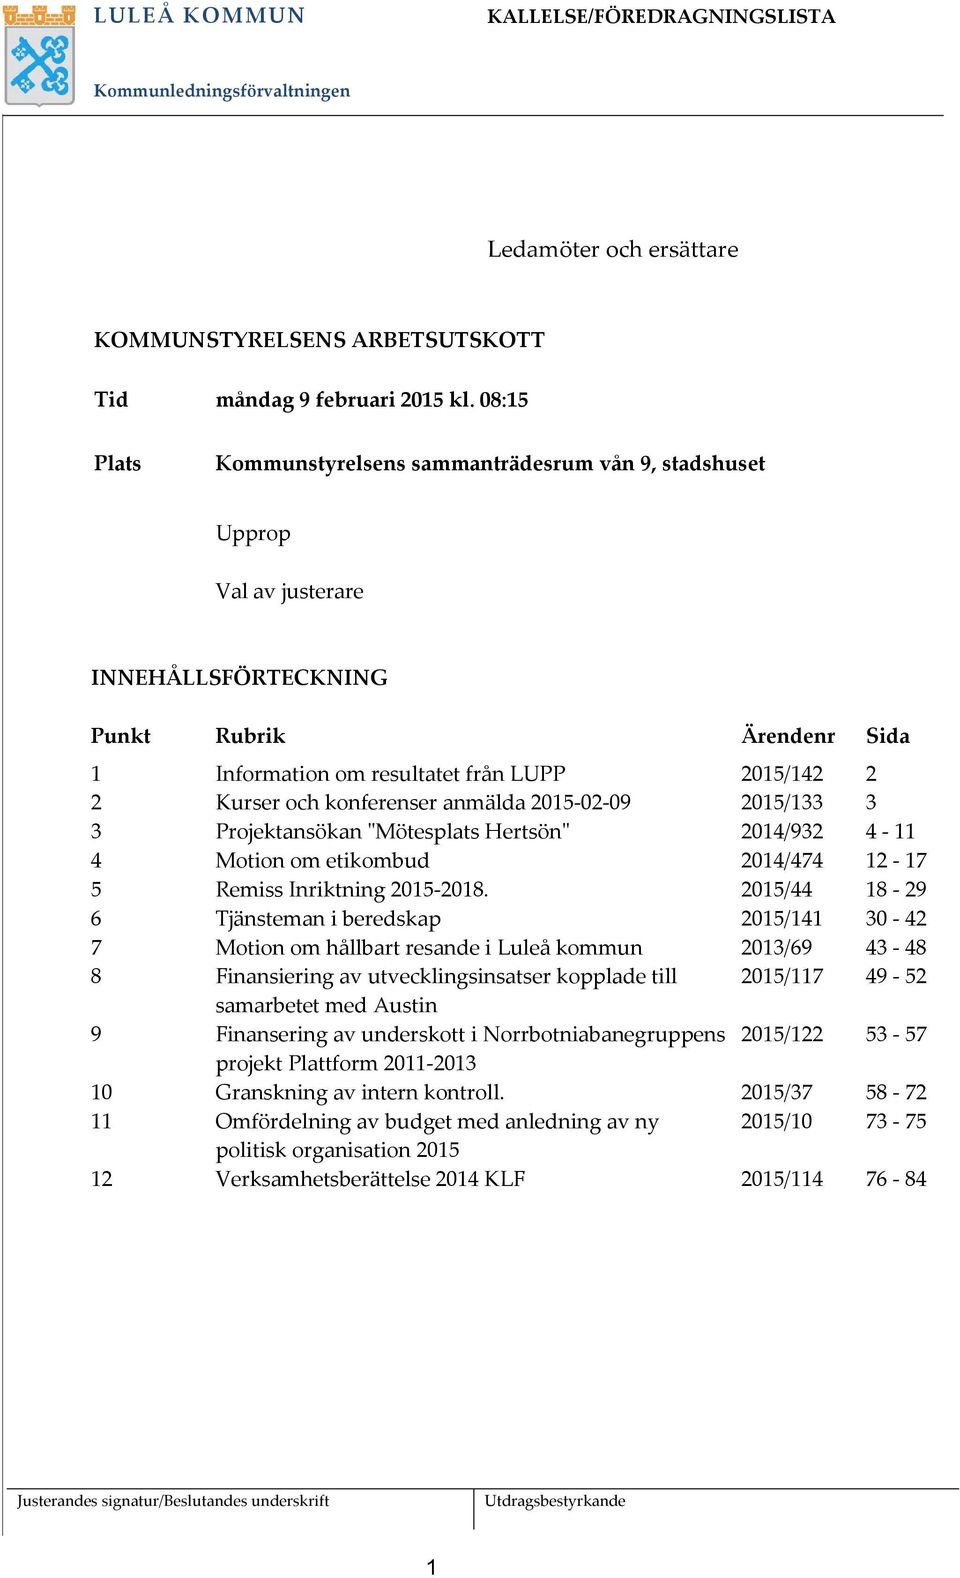 konferenser anmälda 2015-02-09 2015/133 3 3 Projektansökan "Mötesplats Hertsön" 2014/932 4-11 4 Motion om etikombud 2014/474 12-17 5 Remiss Inriktning 2015-2018.